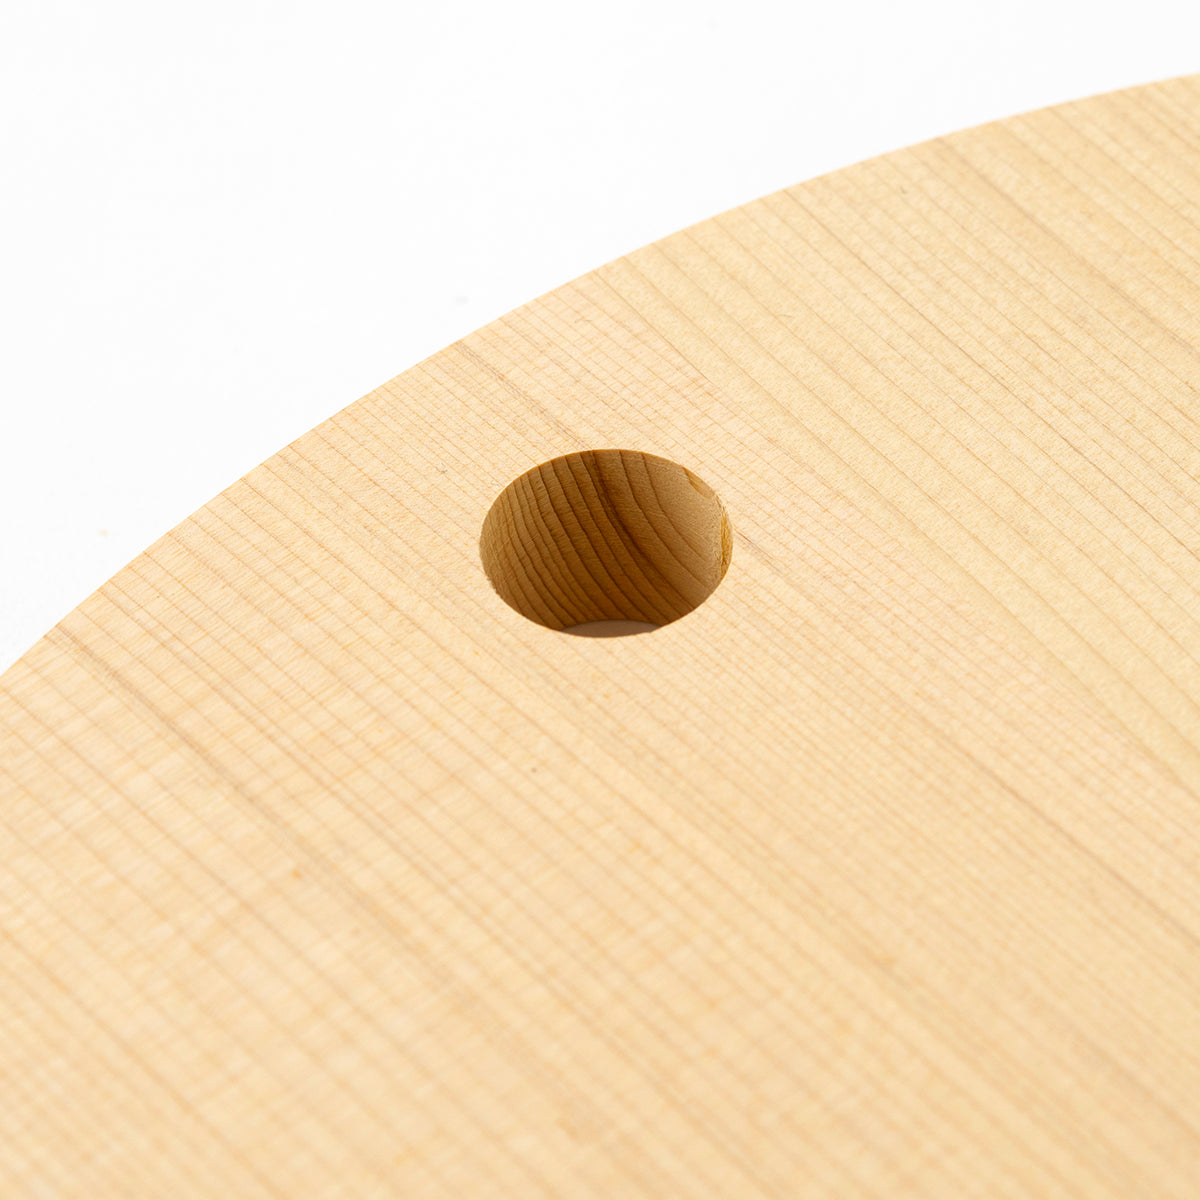 丸いまな板 青森ひばの丸まな板 L 丸型まな板 – 梅沢木材工芸社